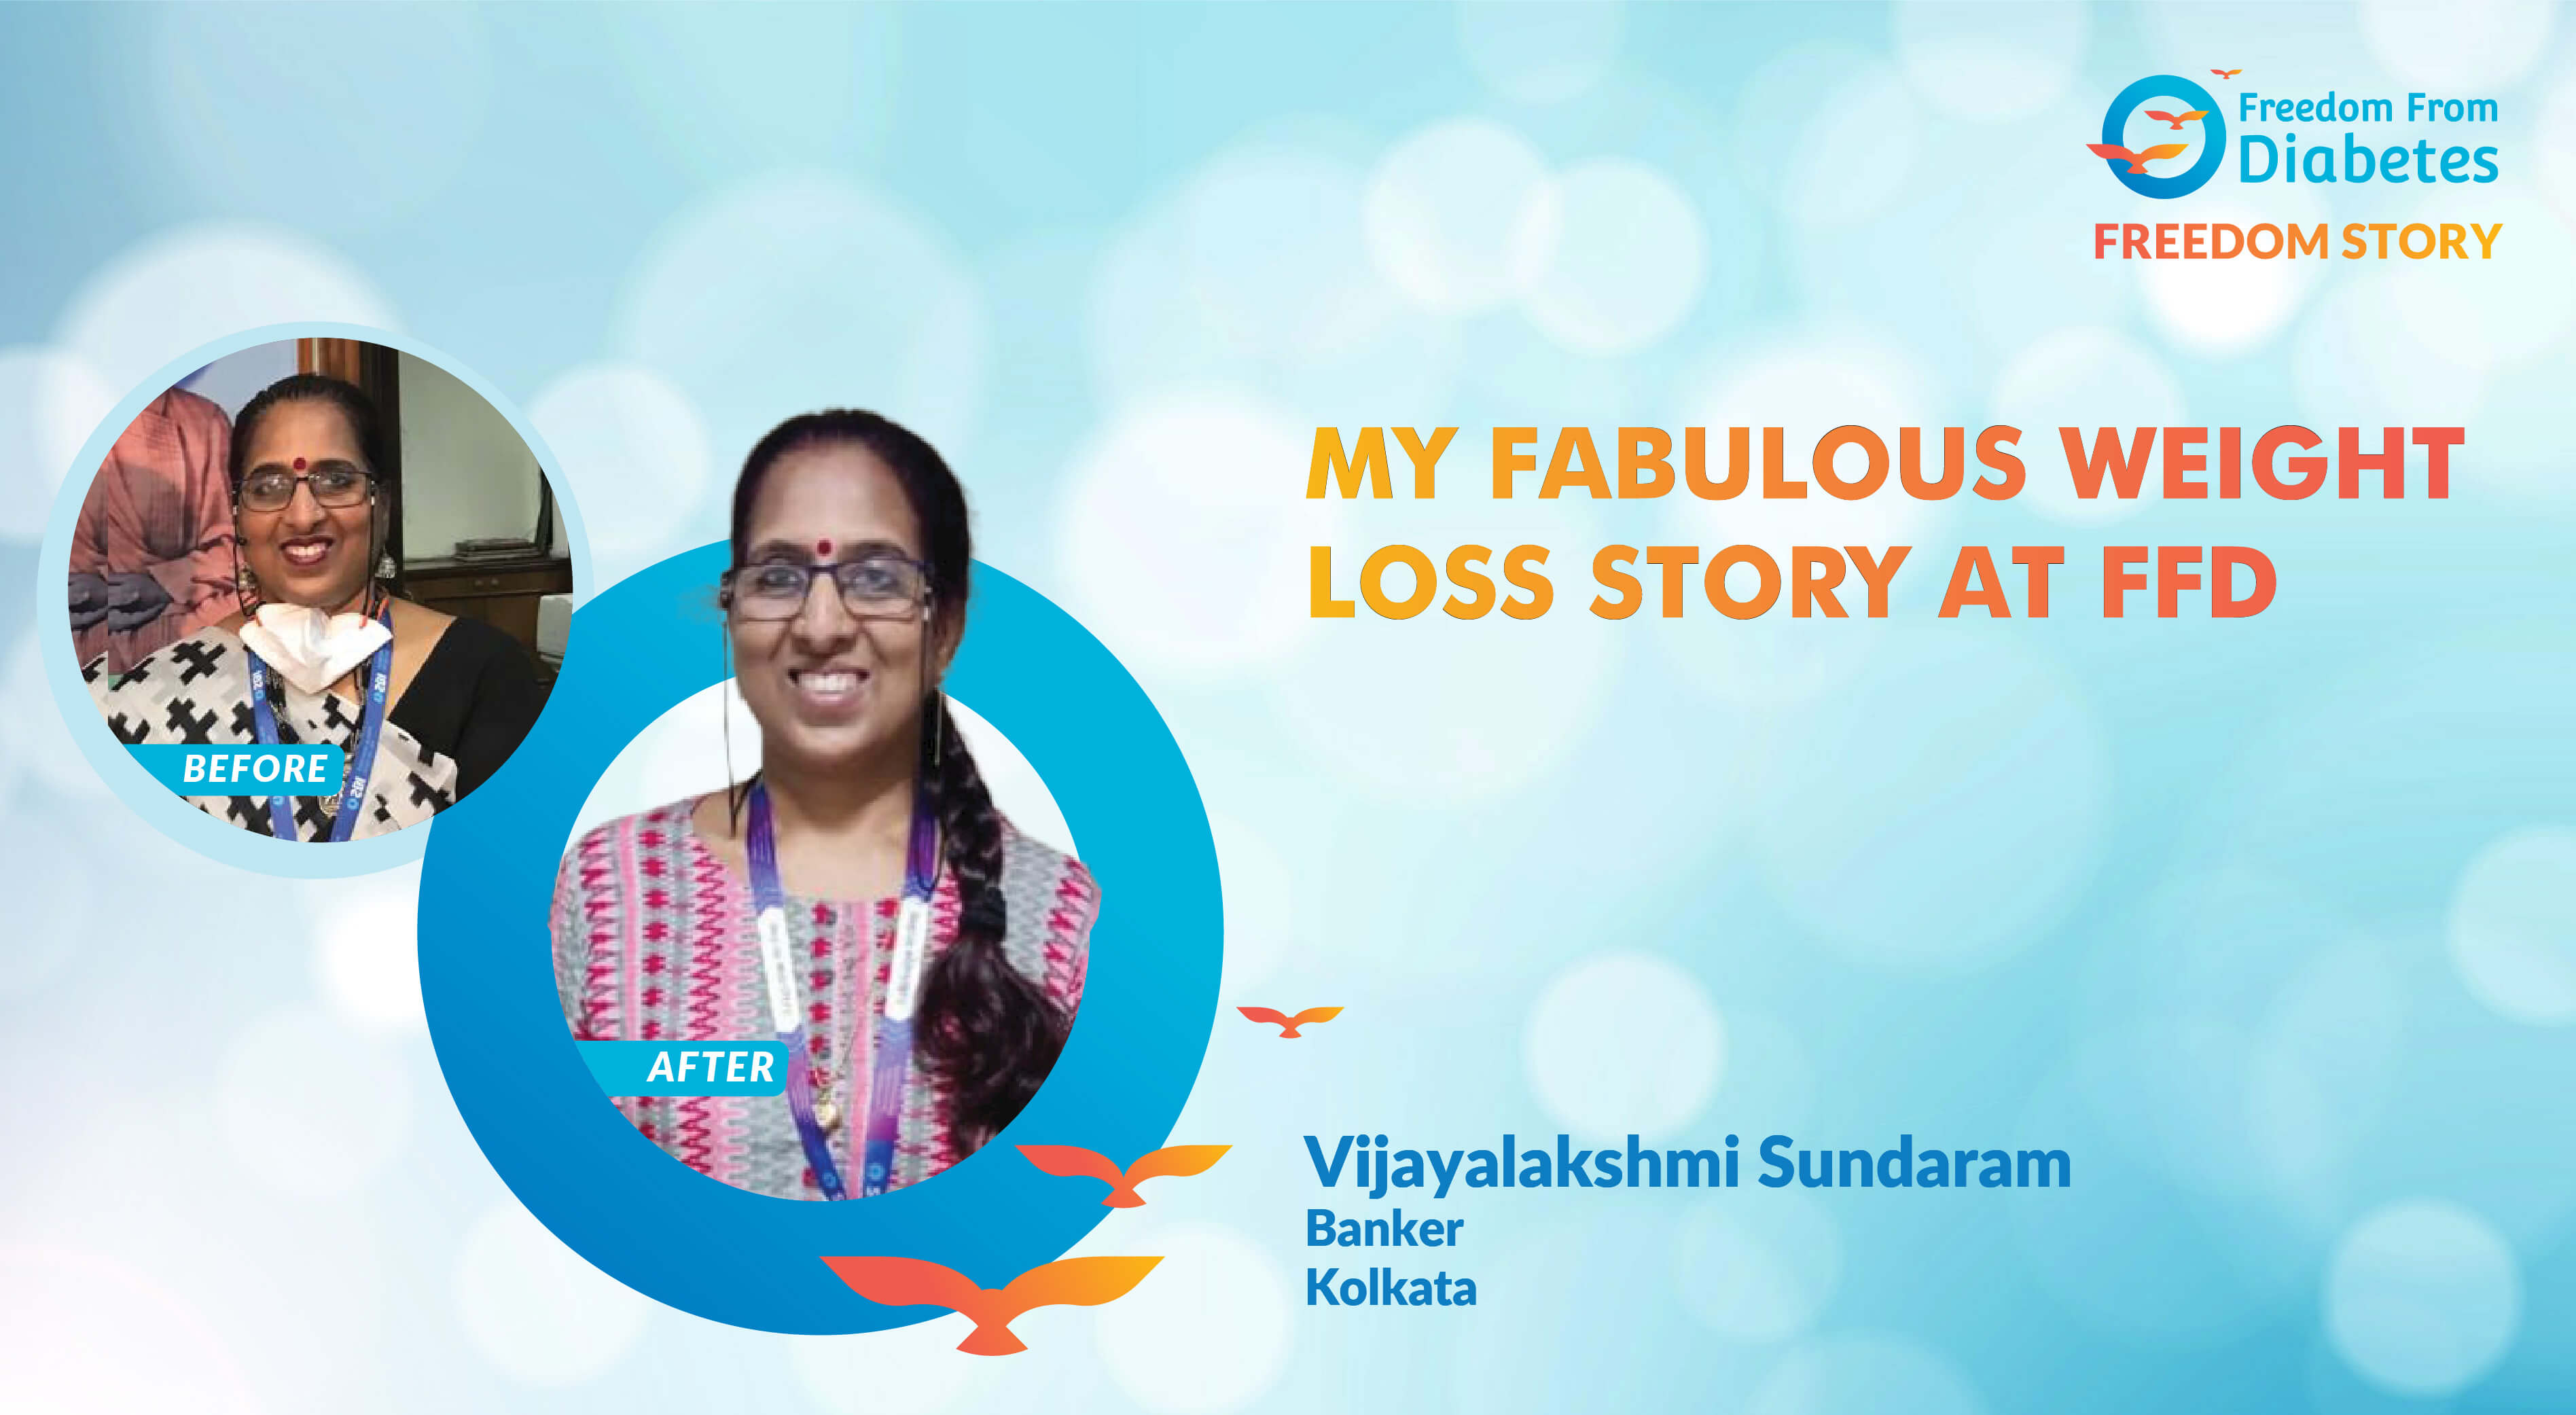 Vijayalakshmi Sundaram: FFD helped me shed 21 kg